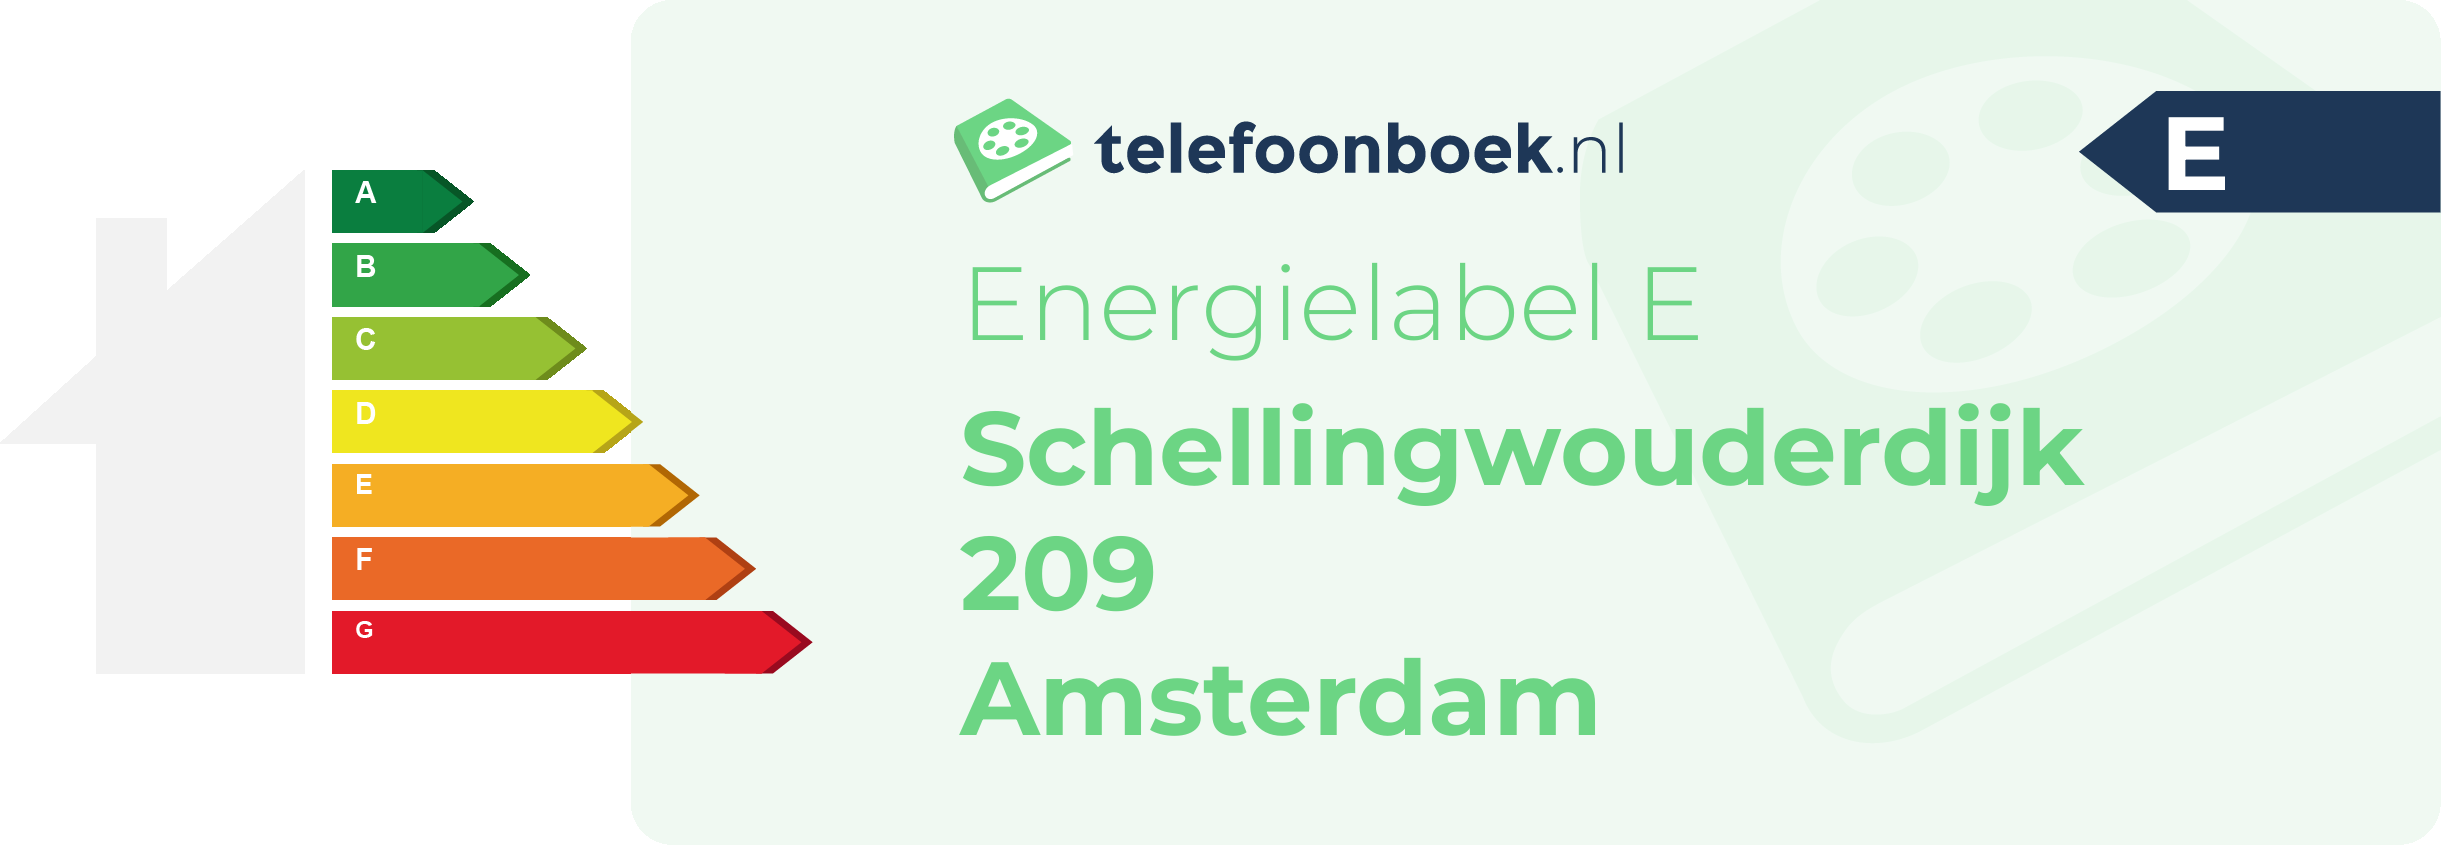 Energielabel Schellingwouderdijk 209 Amsterdam